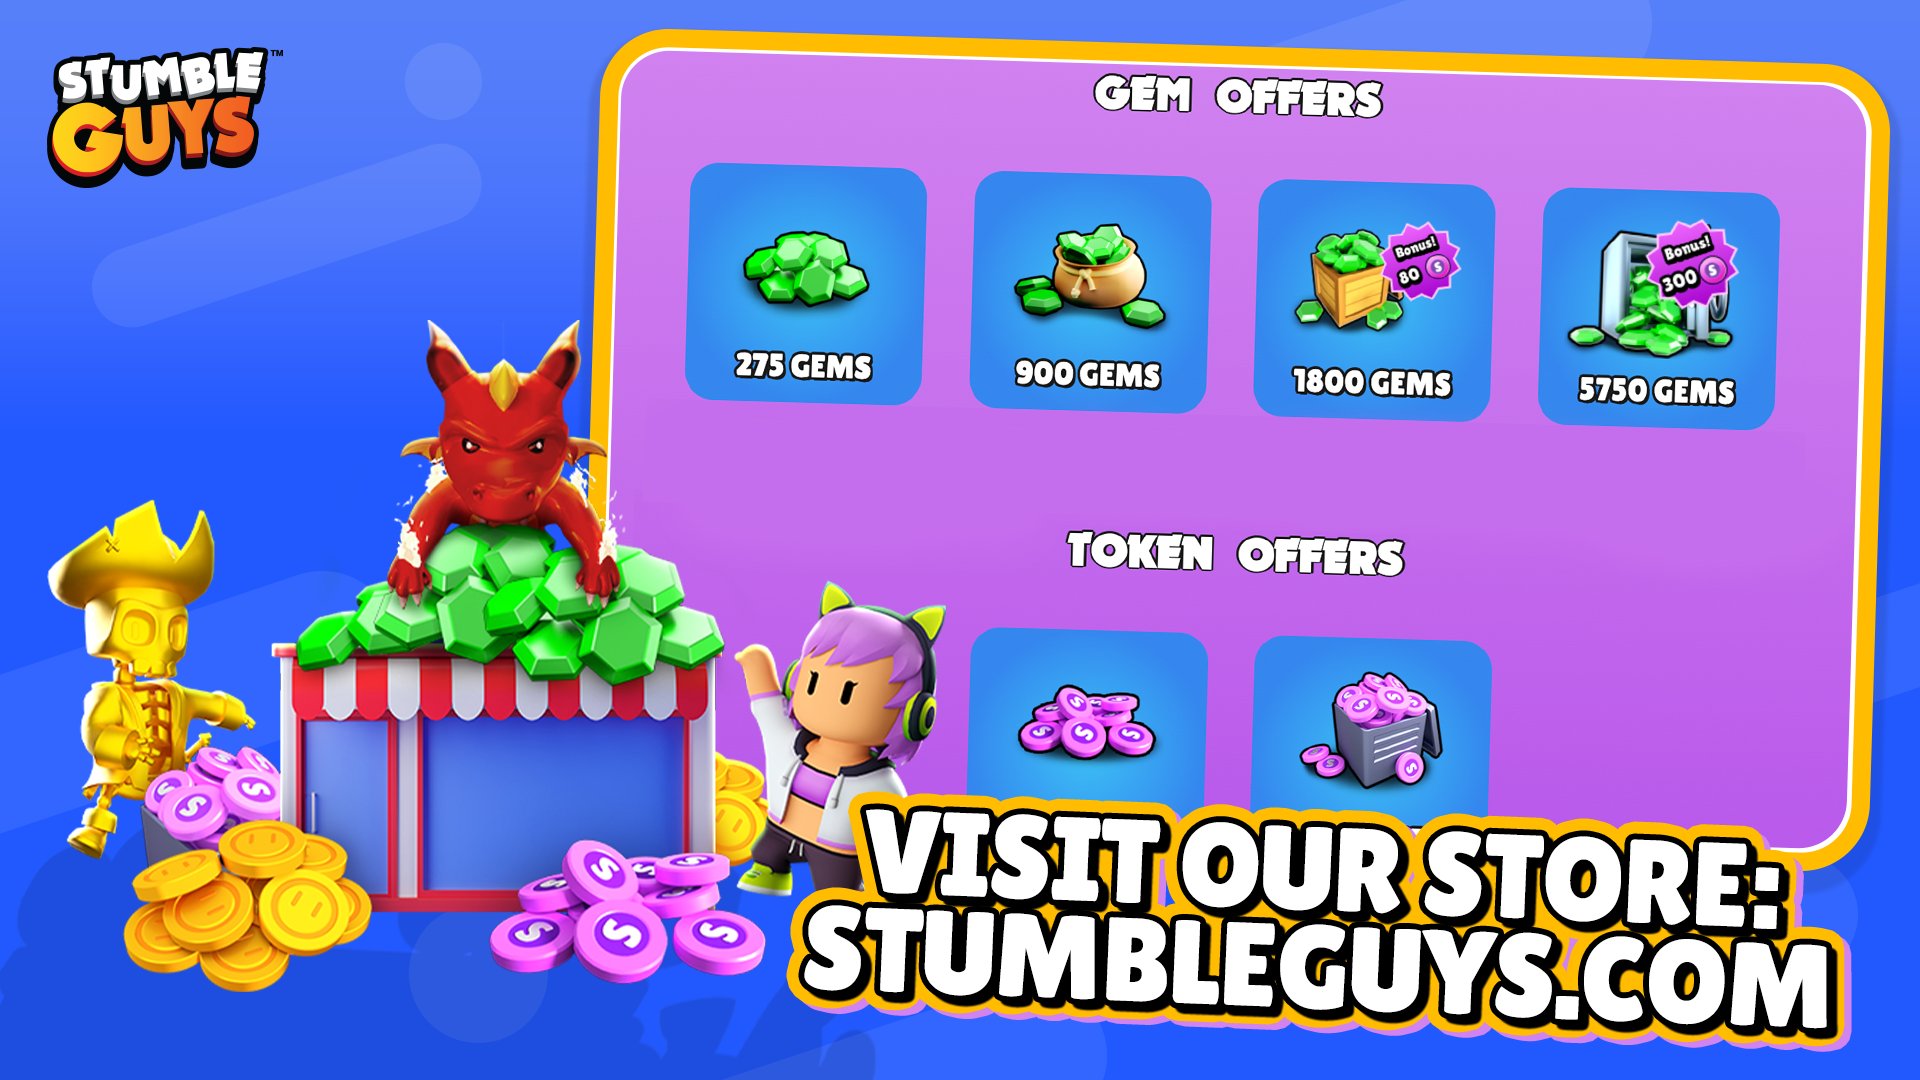 Stumble Guys - Store